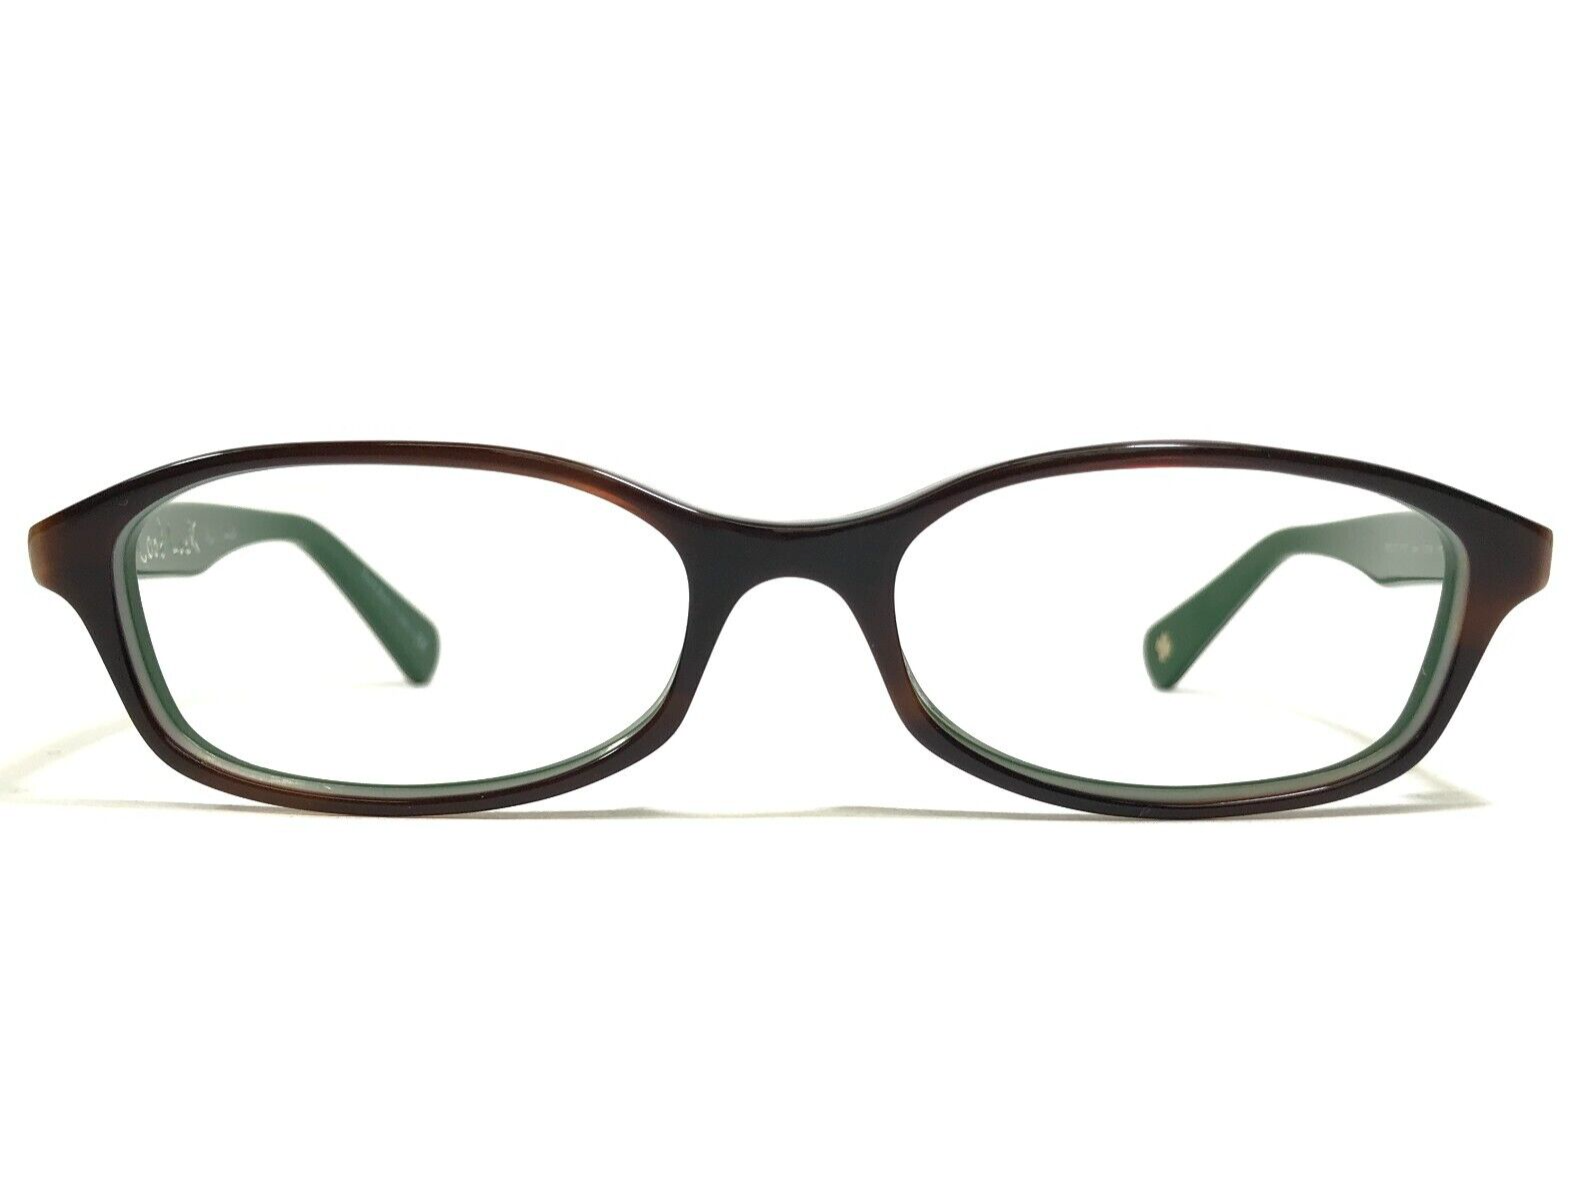 Primary image for Paul Smith Eyeglasses Frames PM8127 1107 Hann Brown Tortoise Green 51-16-140